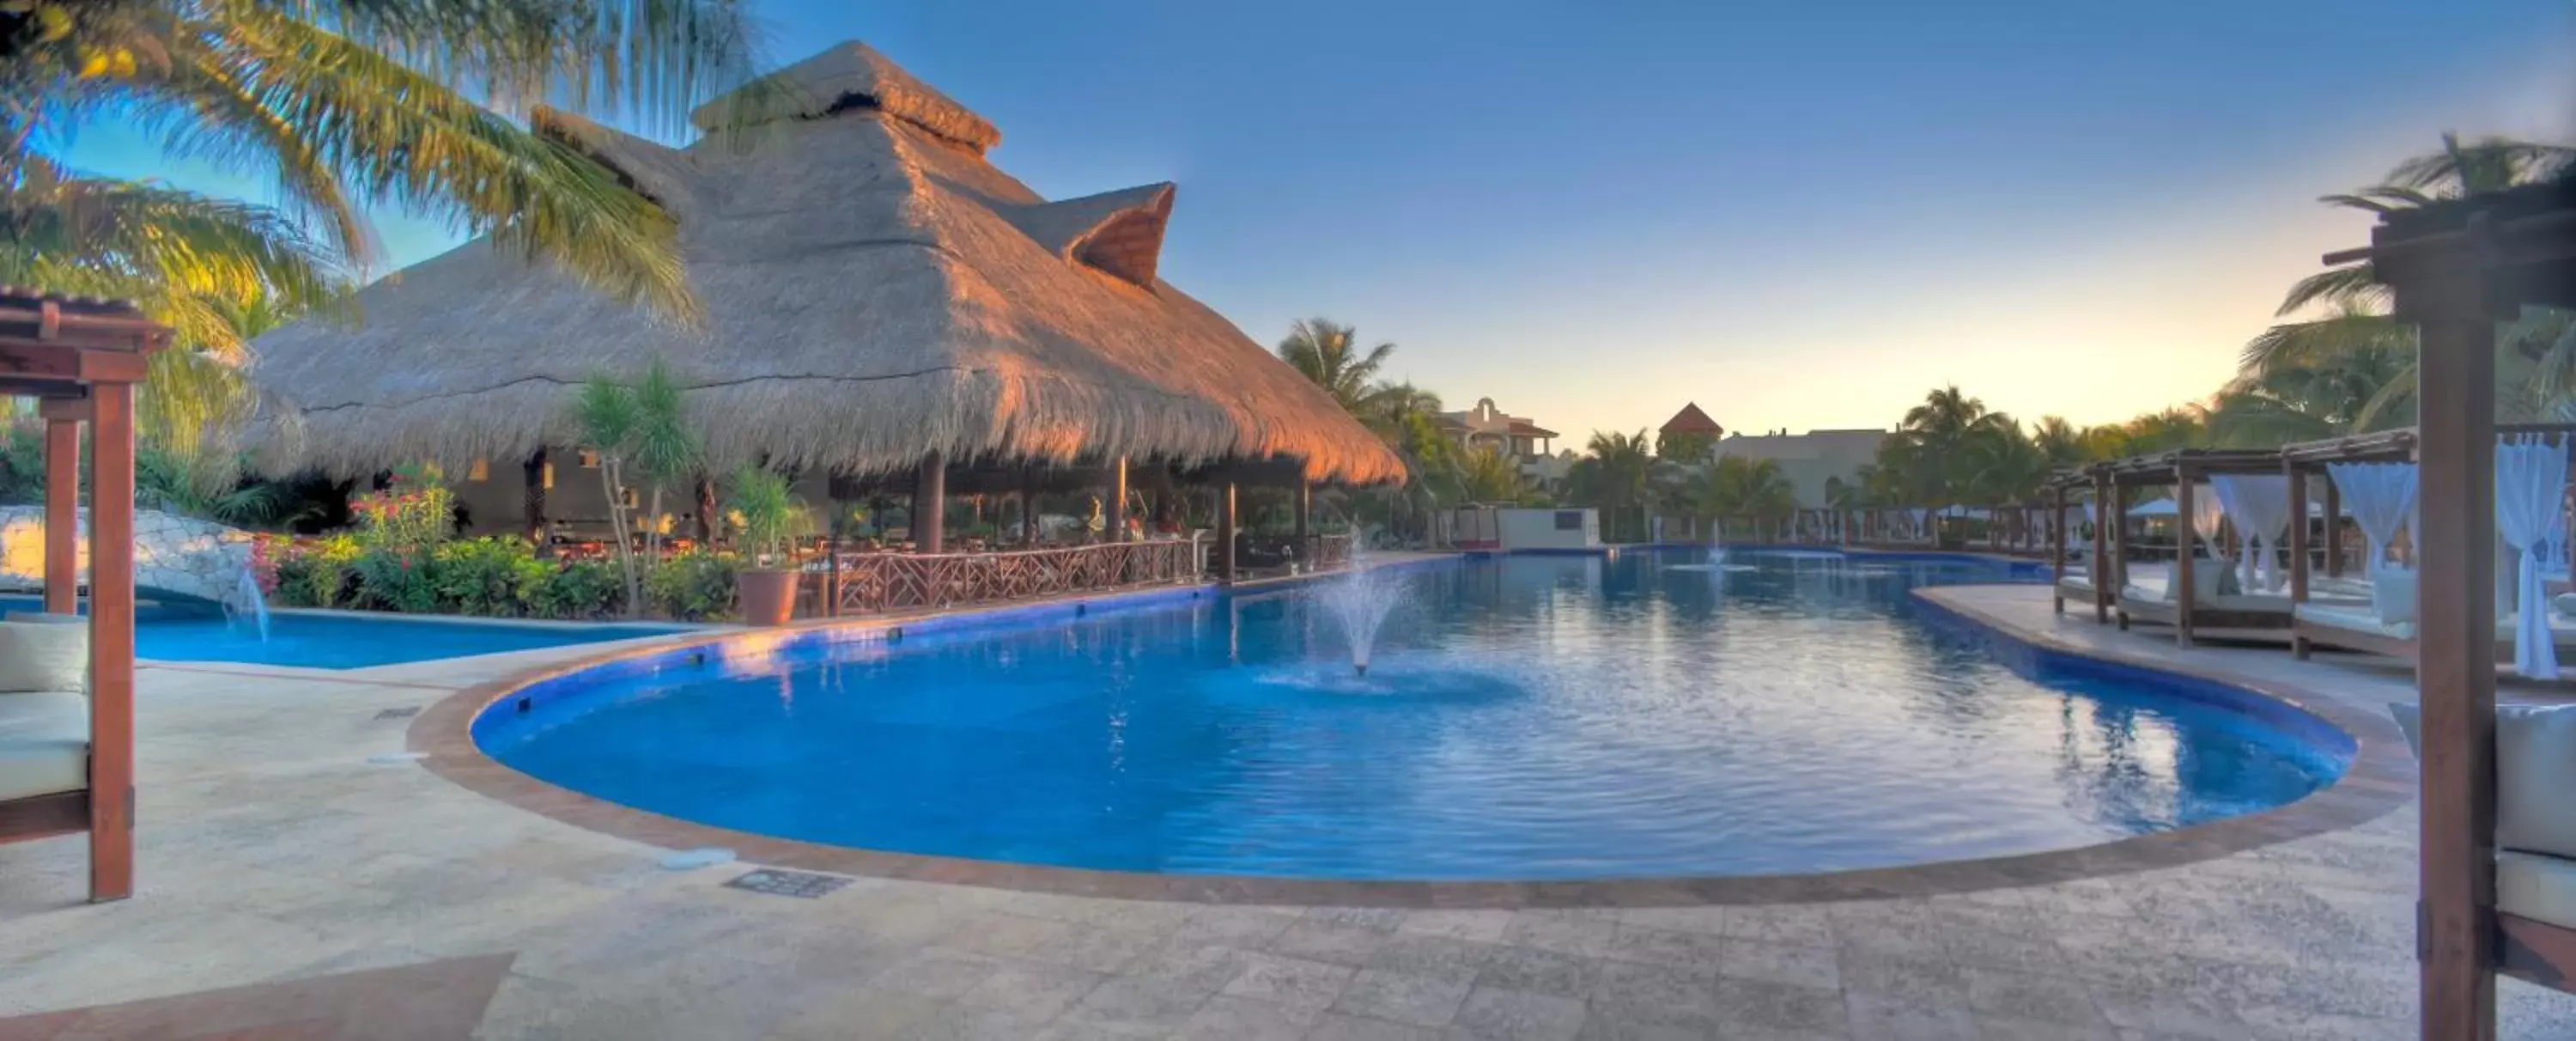 Swimming Pool in El Dorado Royale Gourmet Inclusive Resort & Spa by Karisma - All Inclusive